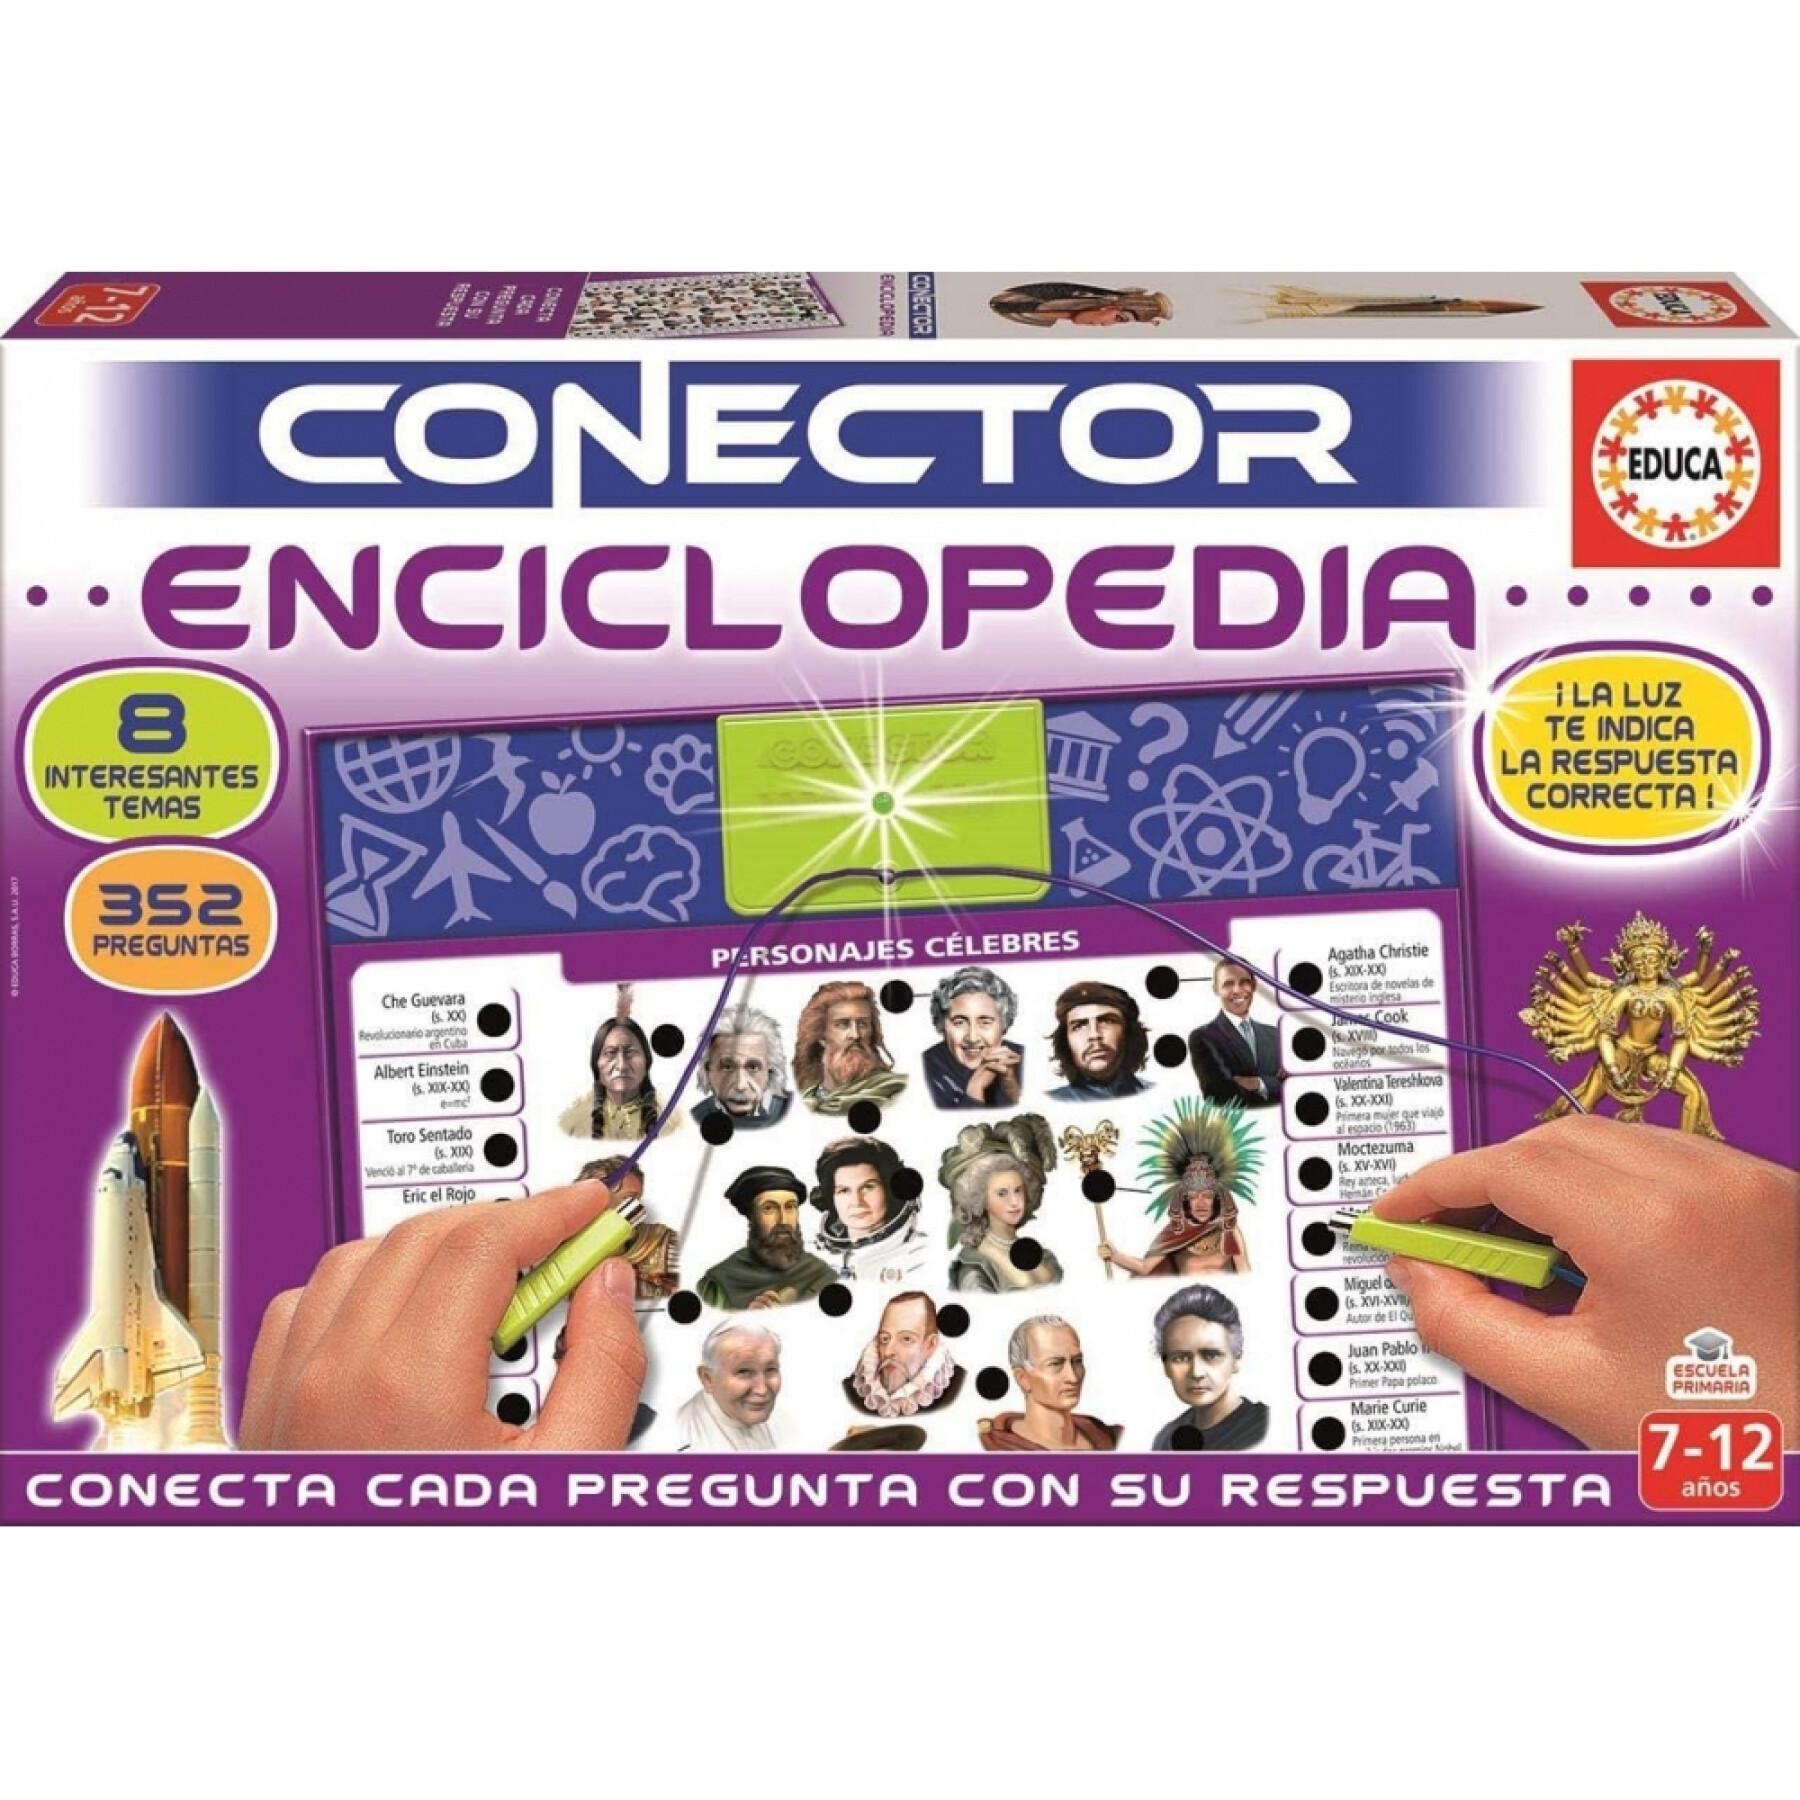 Enciclopedia educativa en tableta Educa Conector